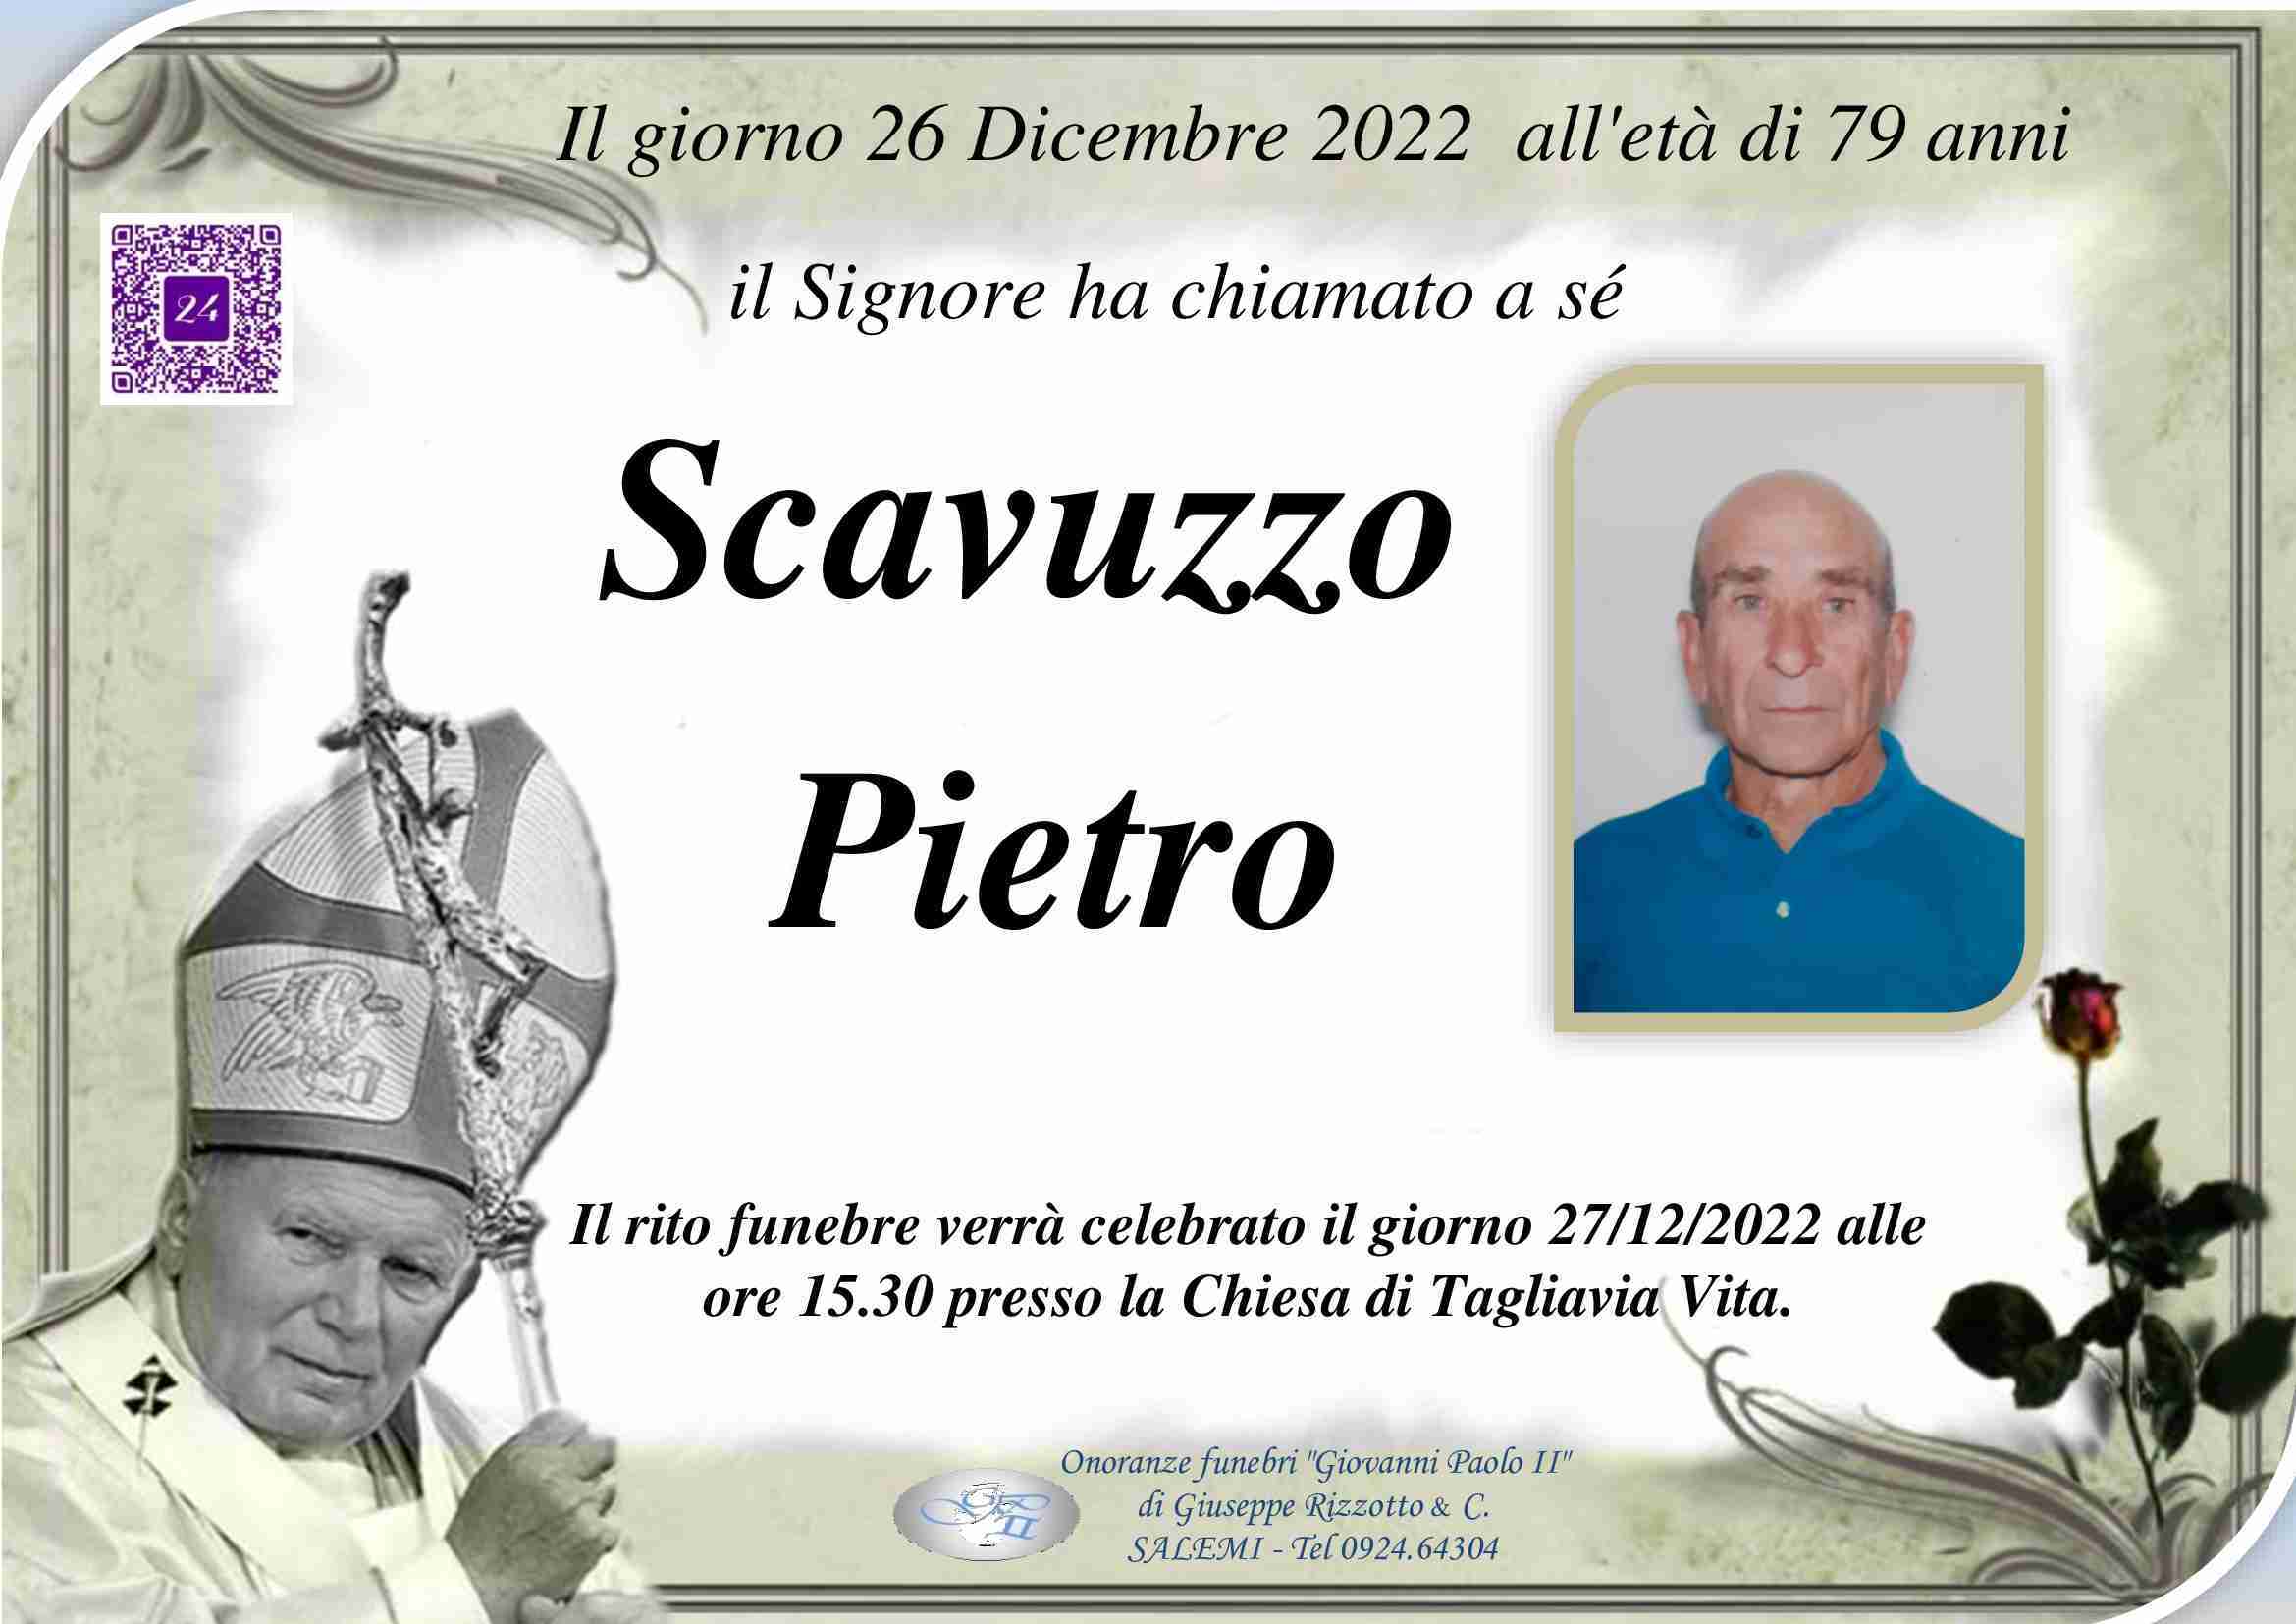 Pietro Scavuzzo